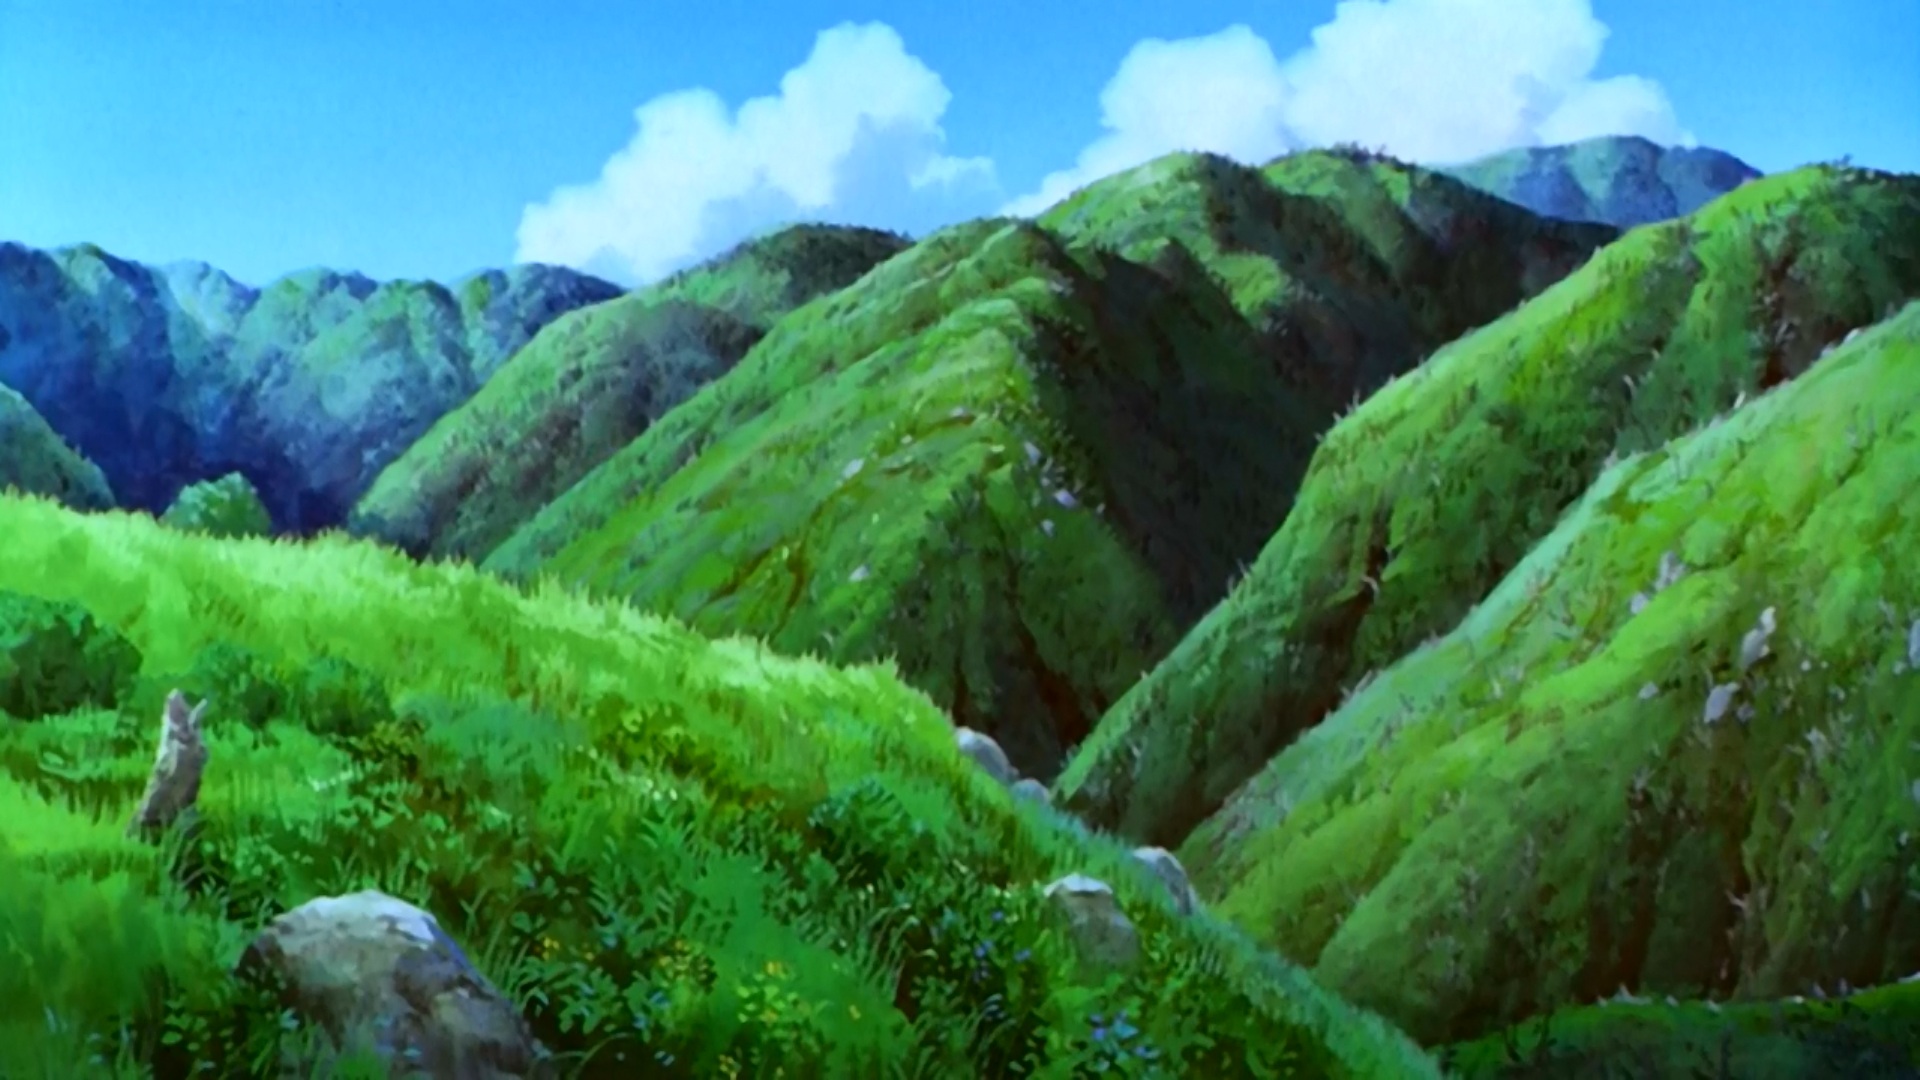 Descarga gratuita de fondo de pantalla para móvil de Animado, La Princesa Mononoke.